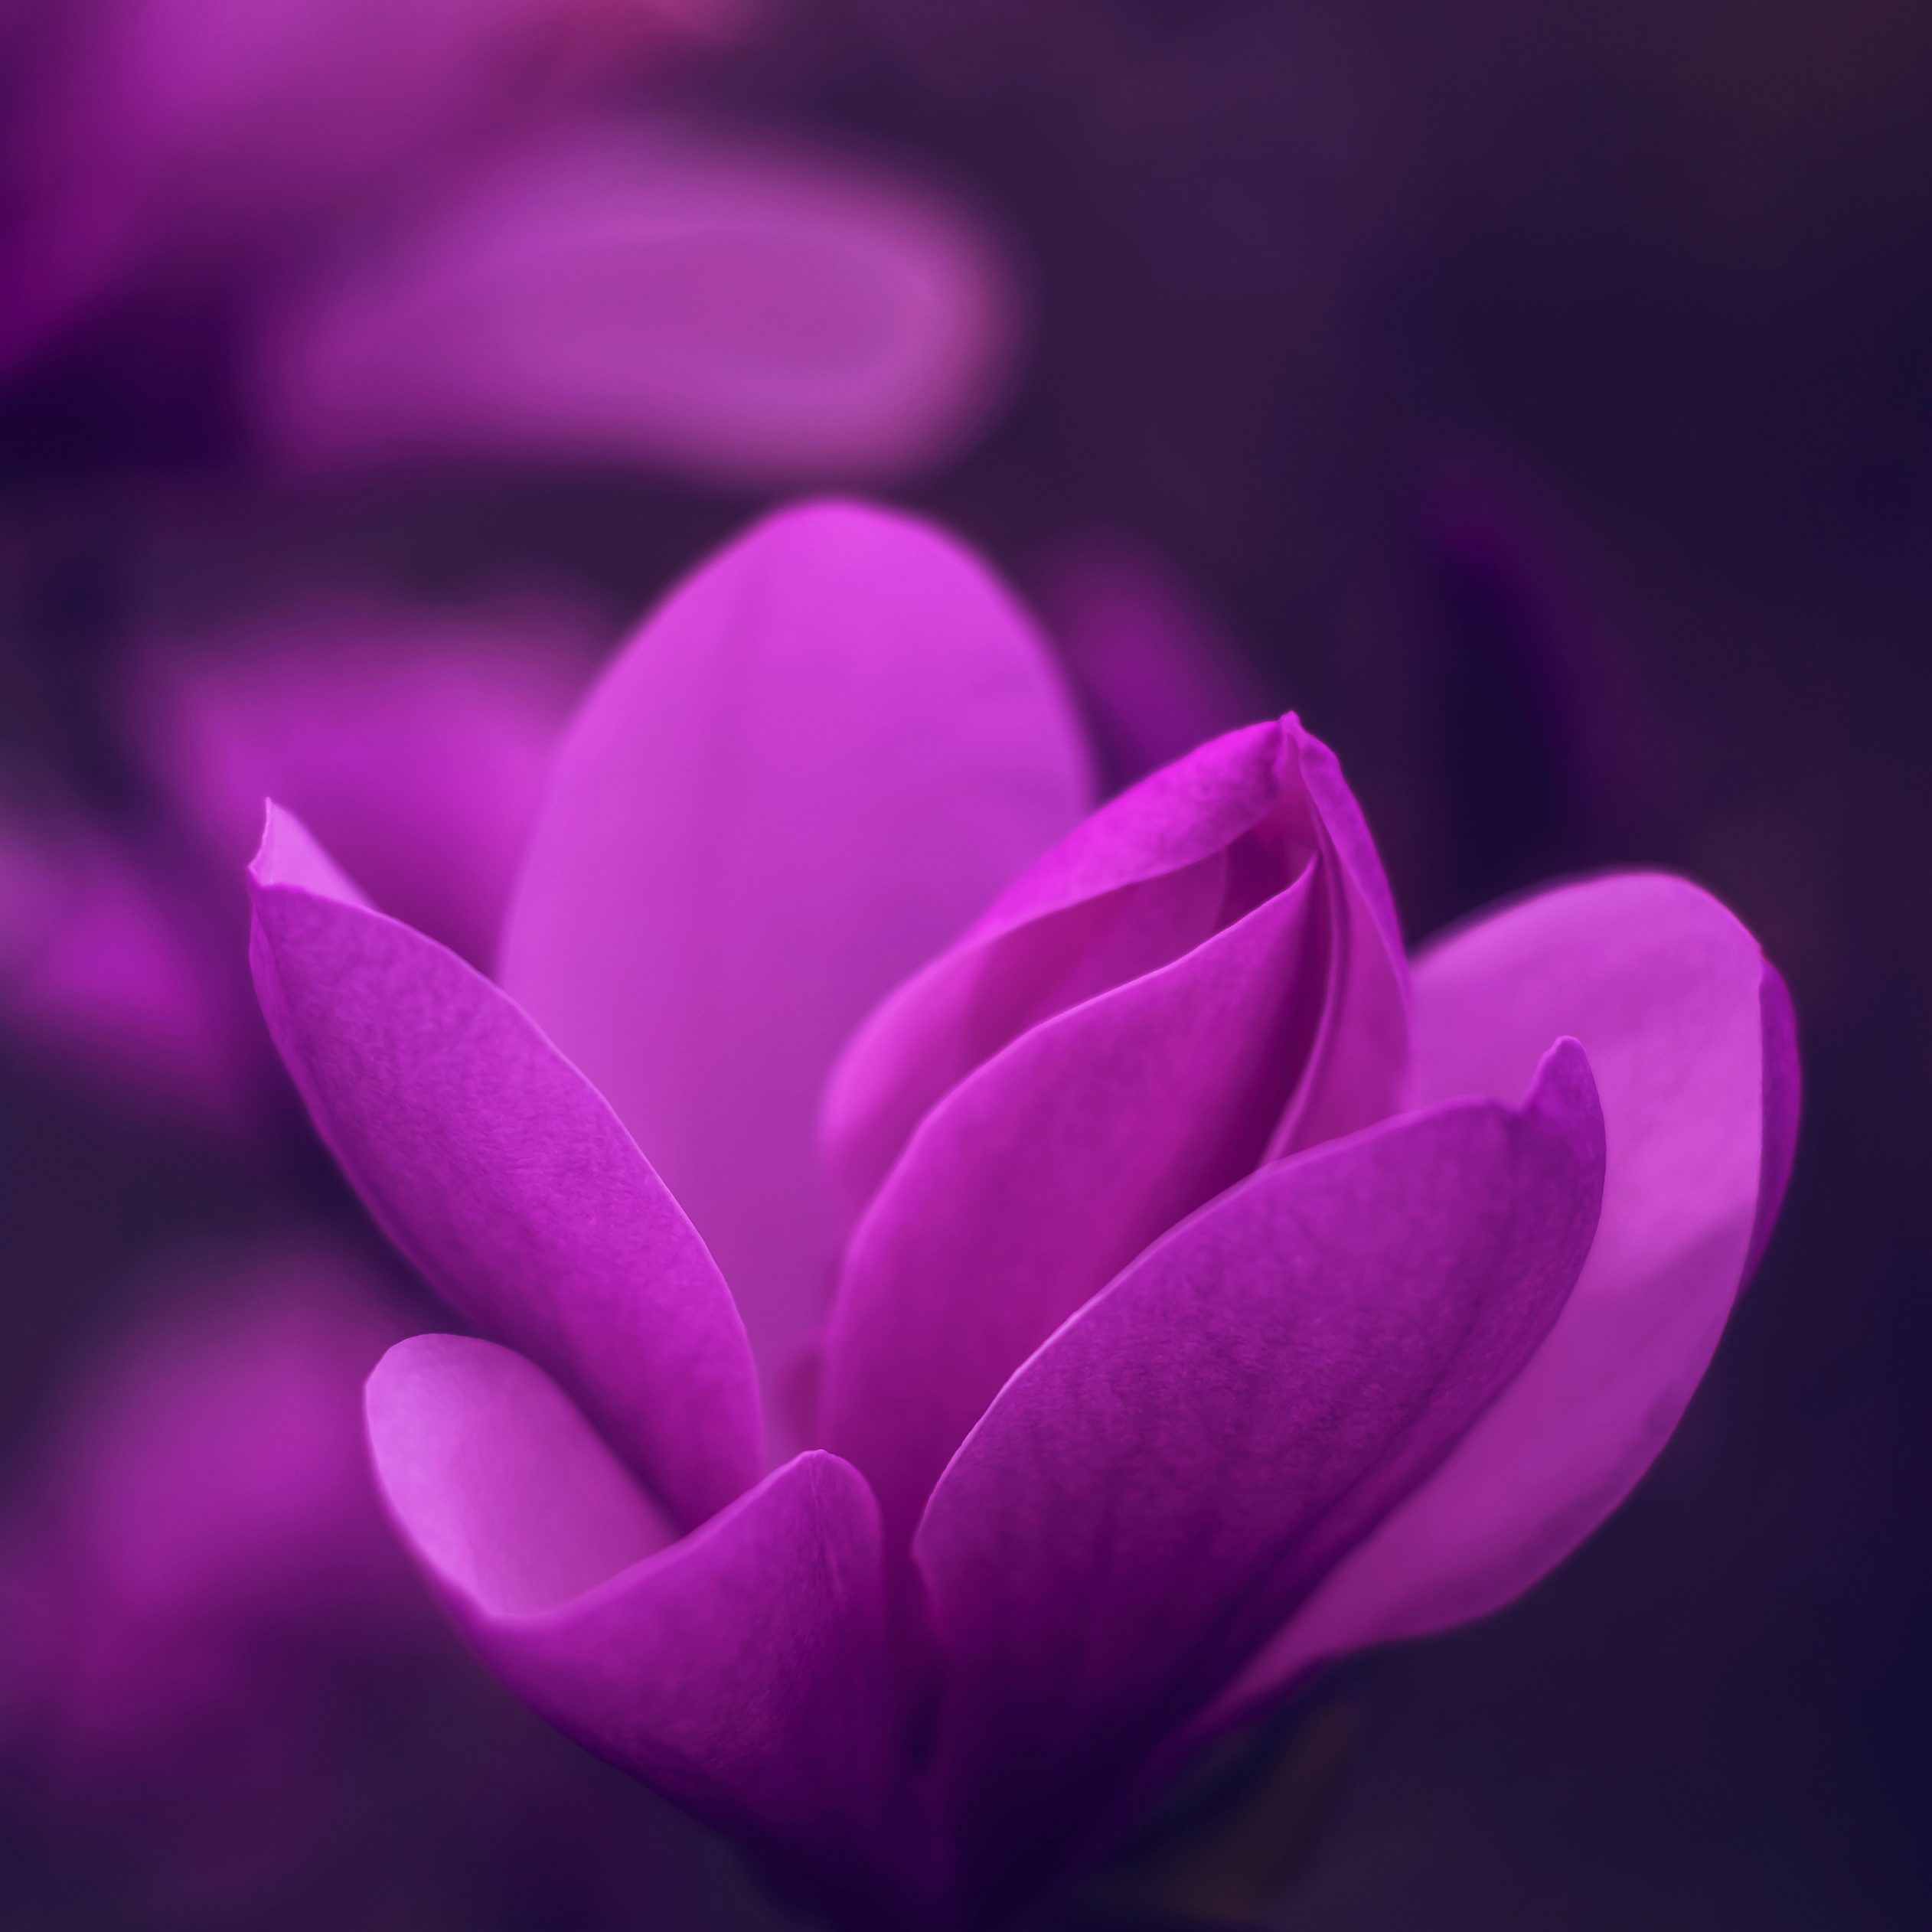 2524x2524 Parallax wallpaper 4k Purple Bloom Blossom Petaled Flower iPad Wallpaper 2524x2524 pixels resolution